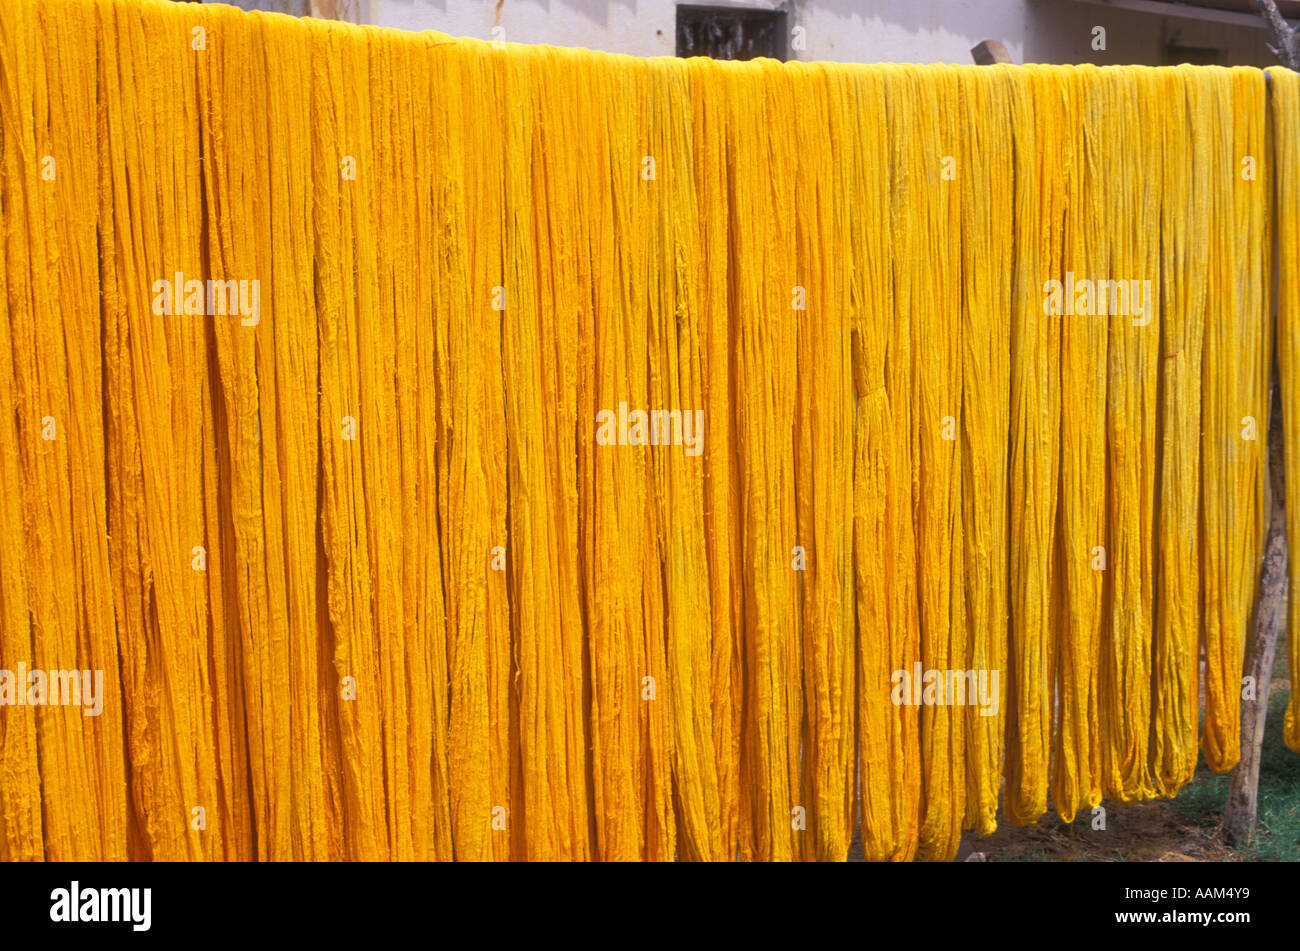 Yellow fibre, To dye, tint. Stock Photo